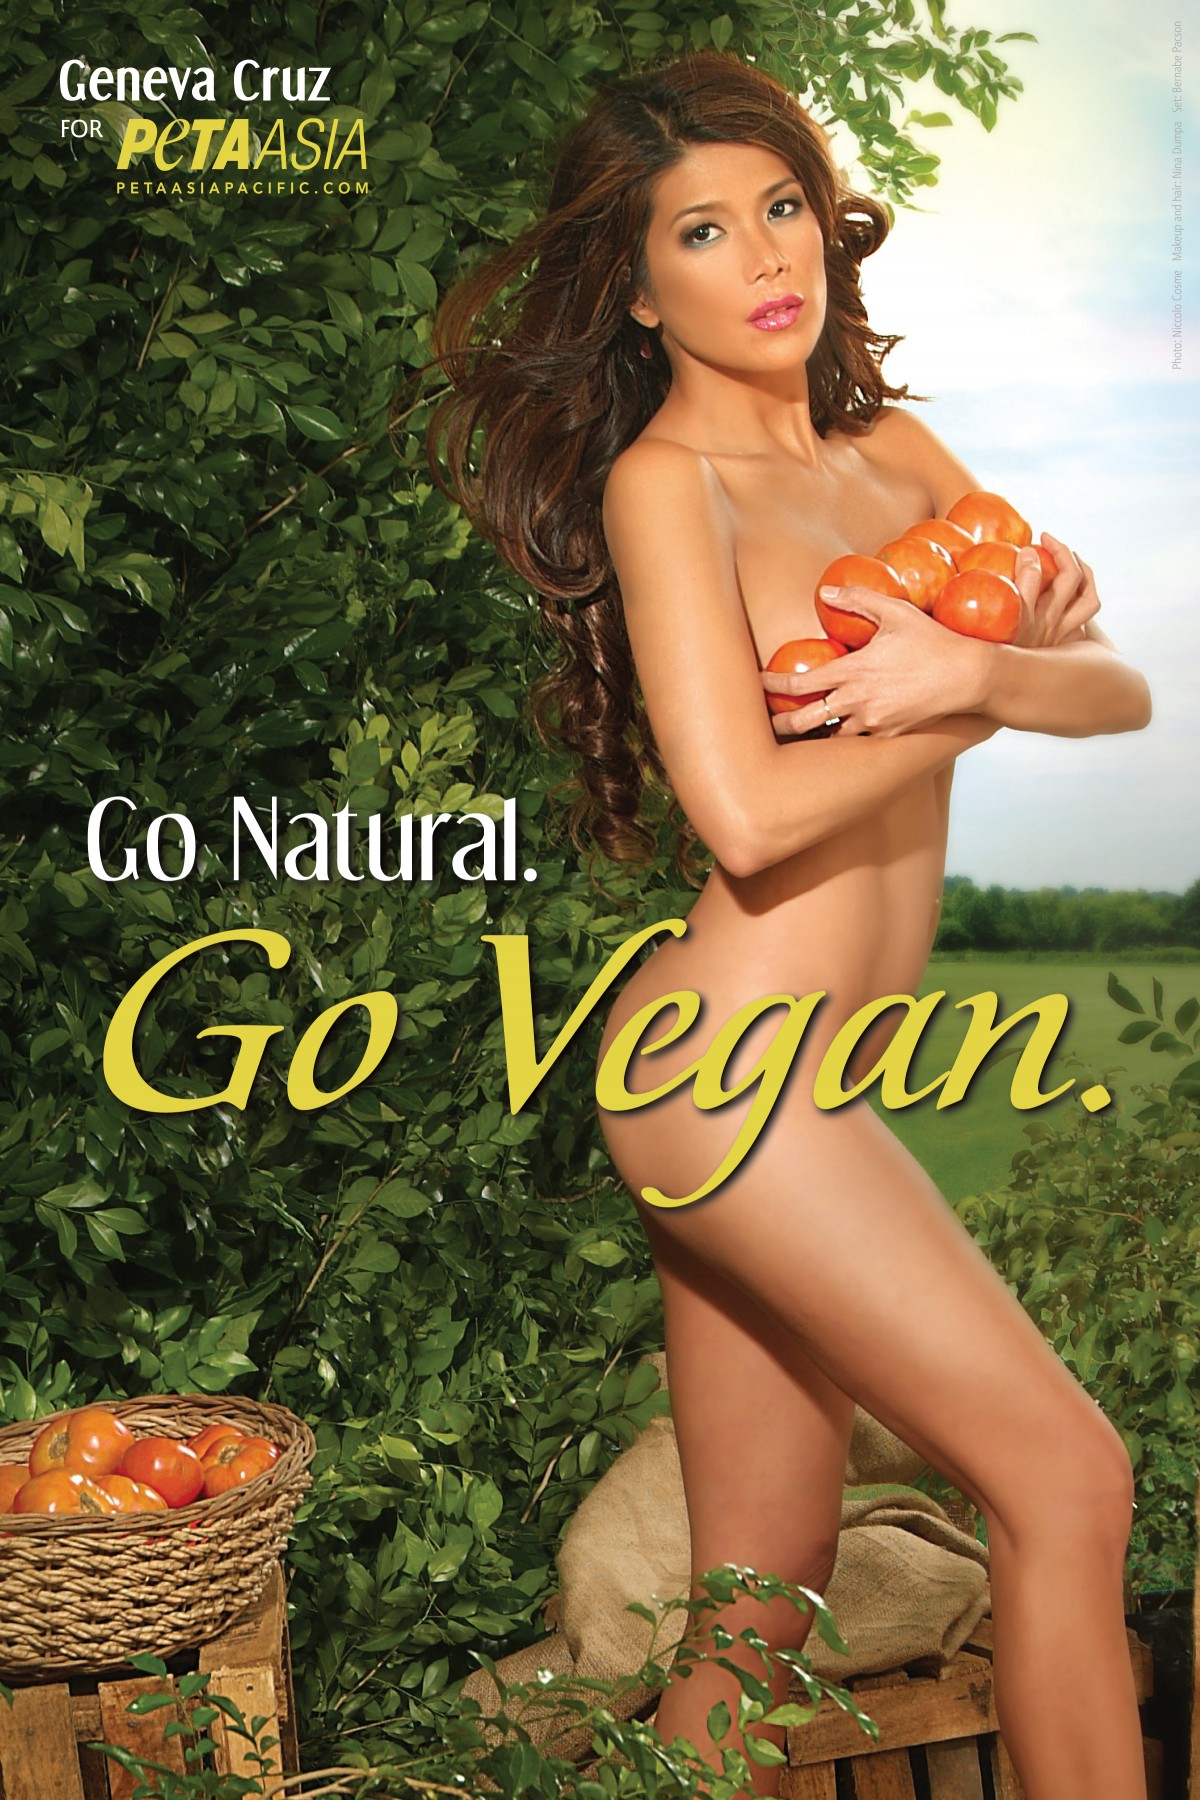 Geneva Cruz Goes Au Naturel in New Pro-Vegetarian Ad